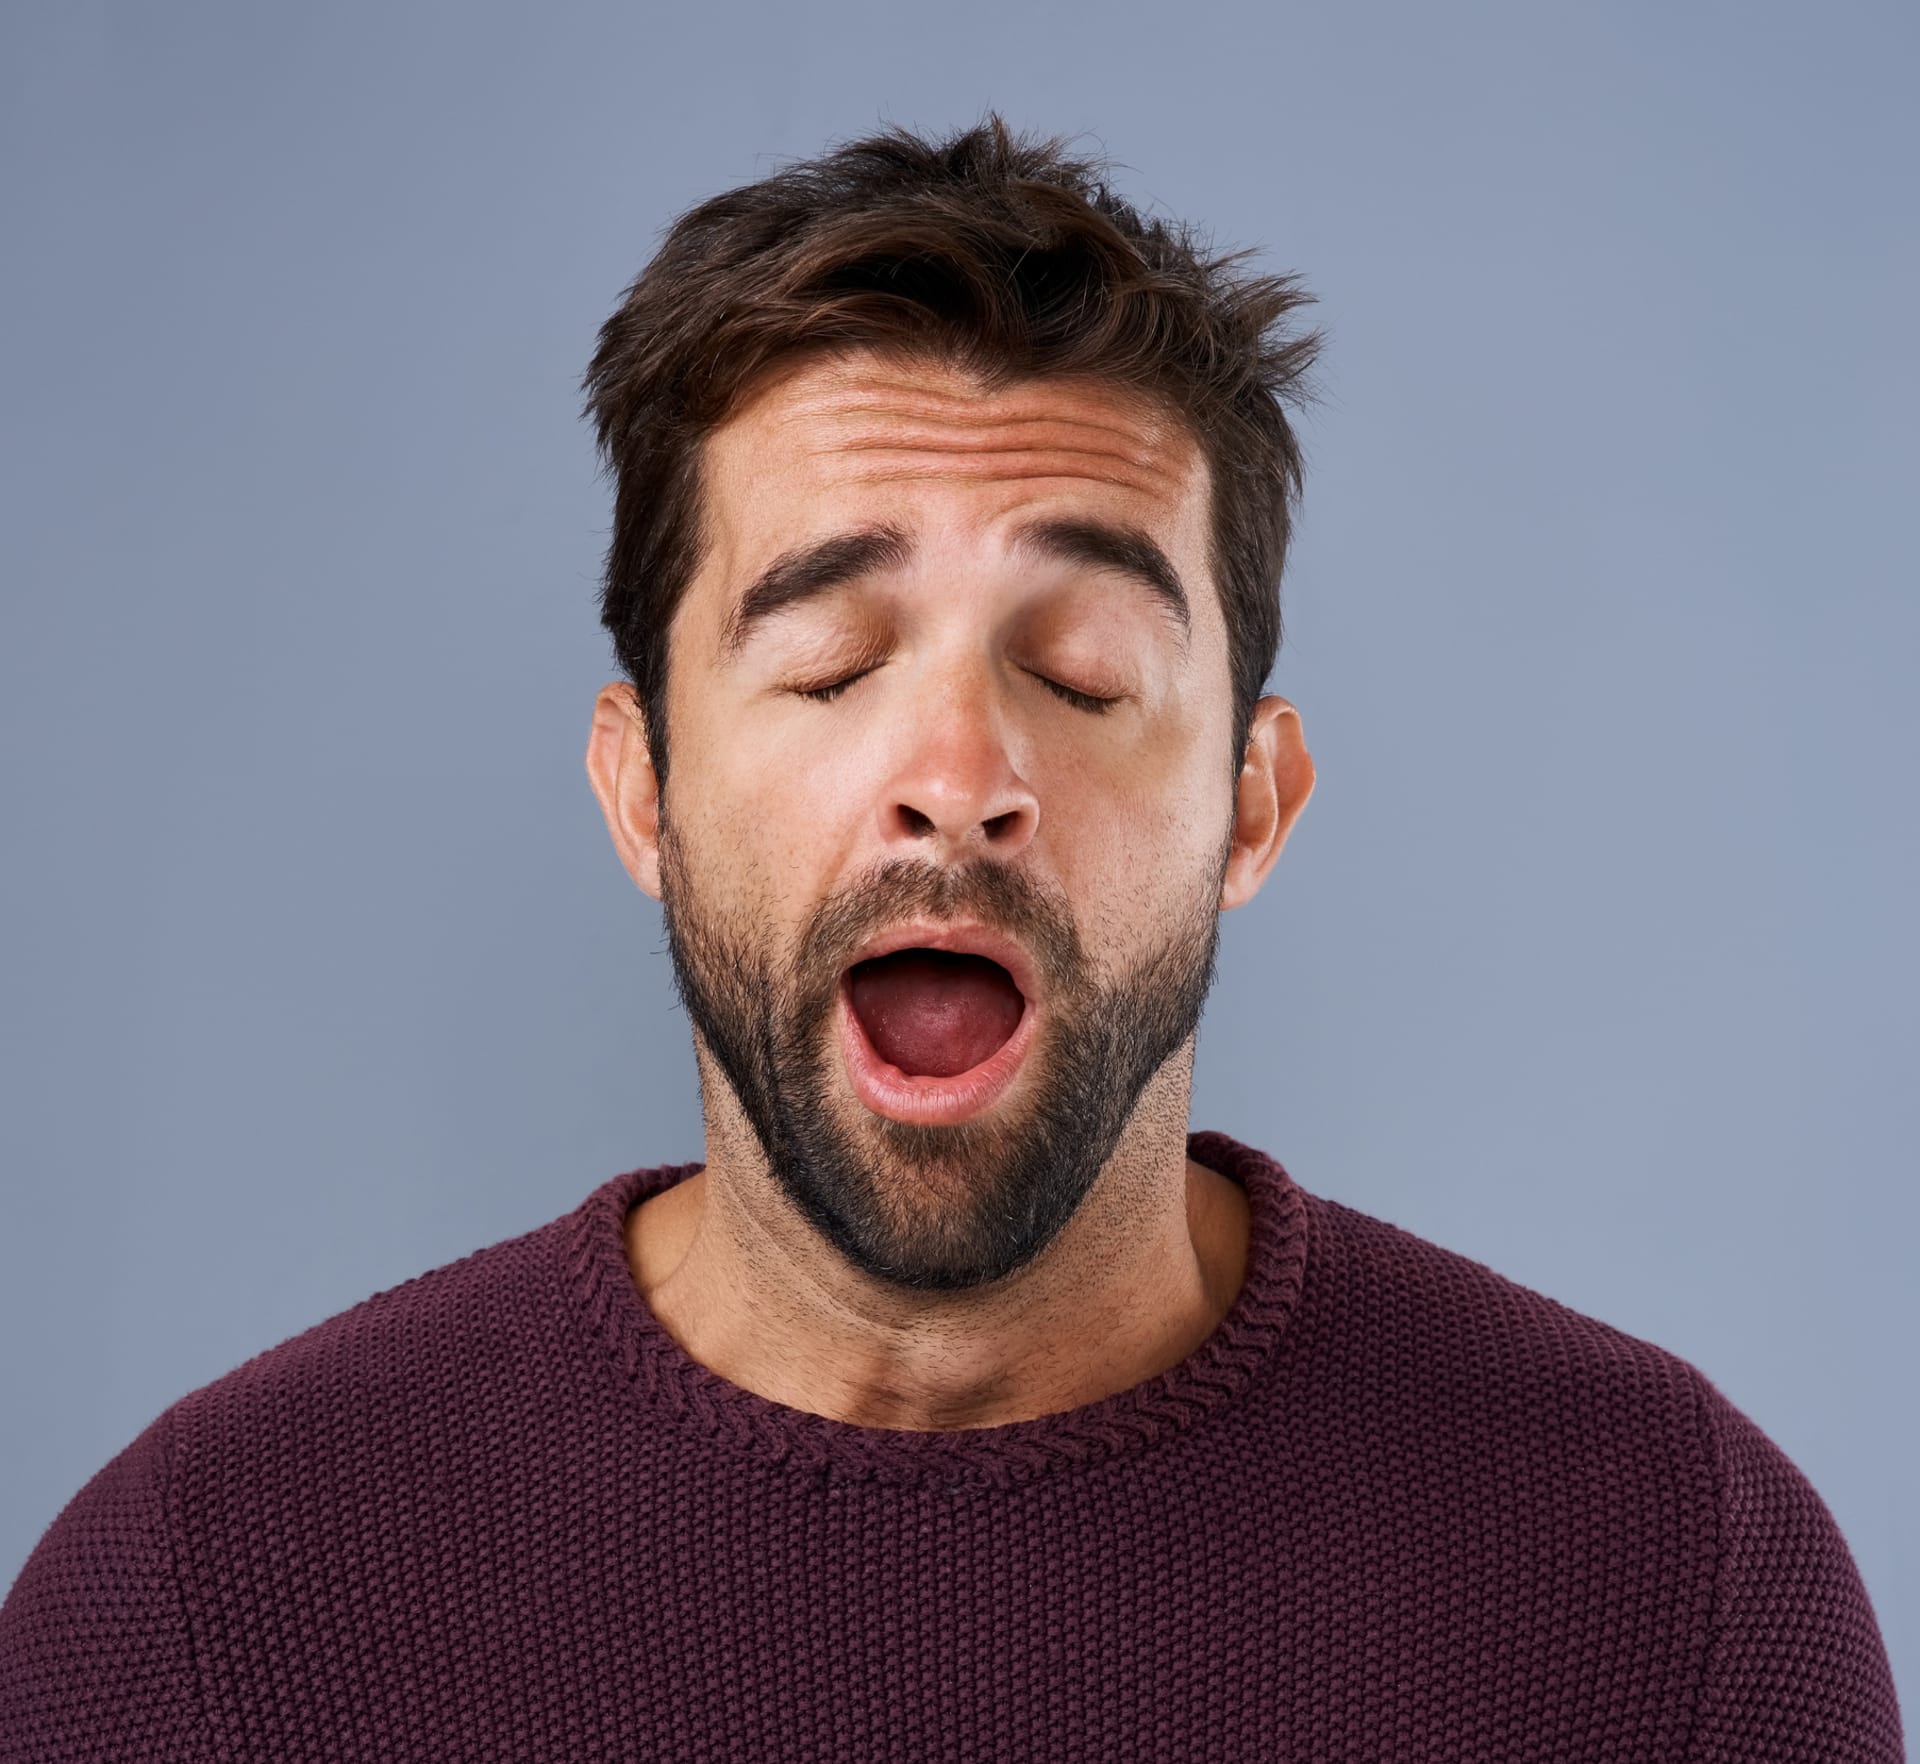 Zívání nemusí vždy souviset s únavou